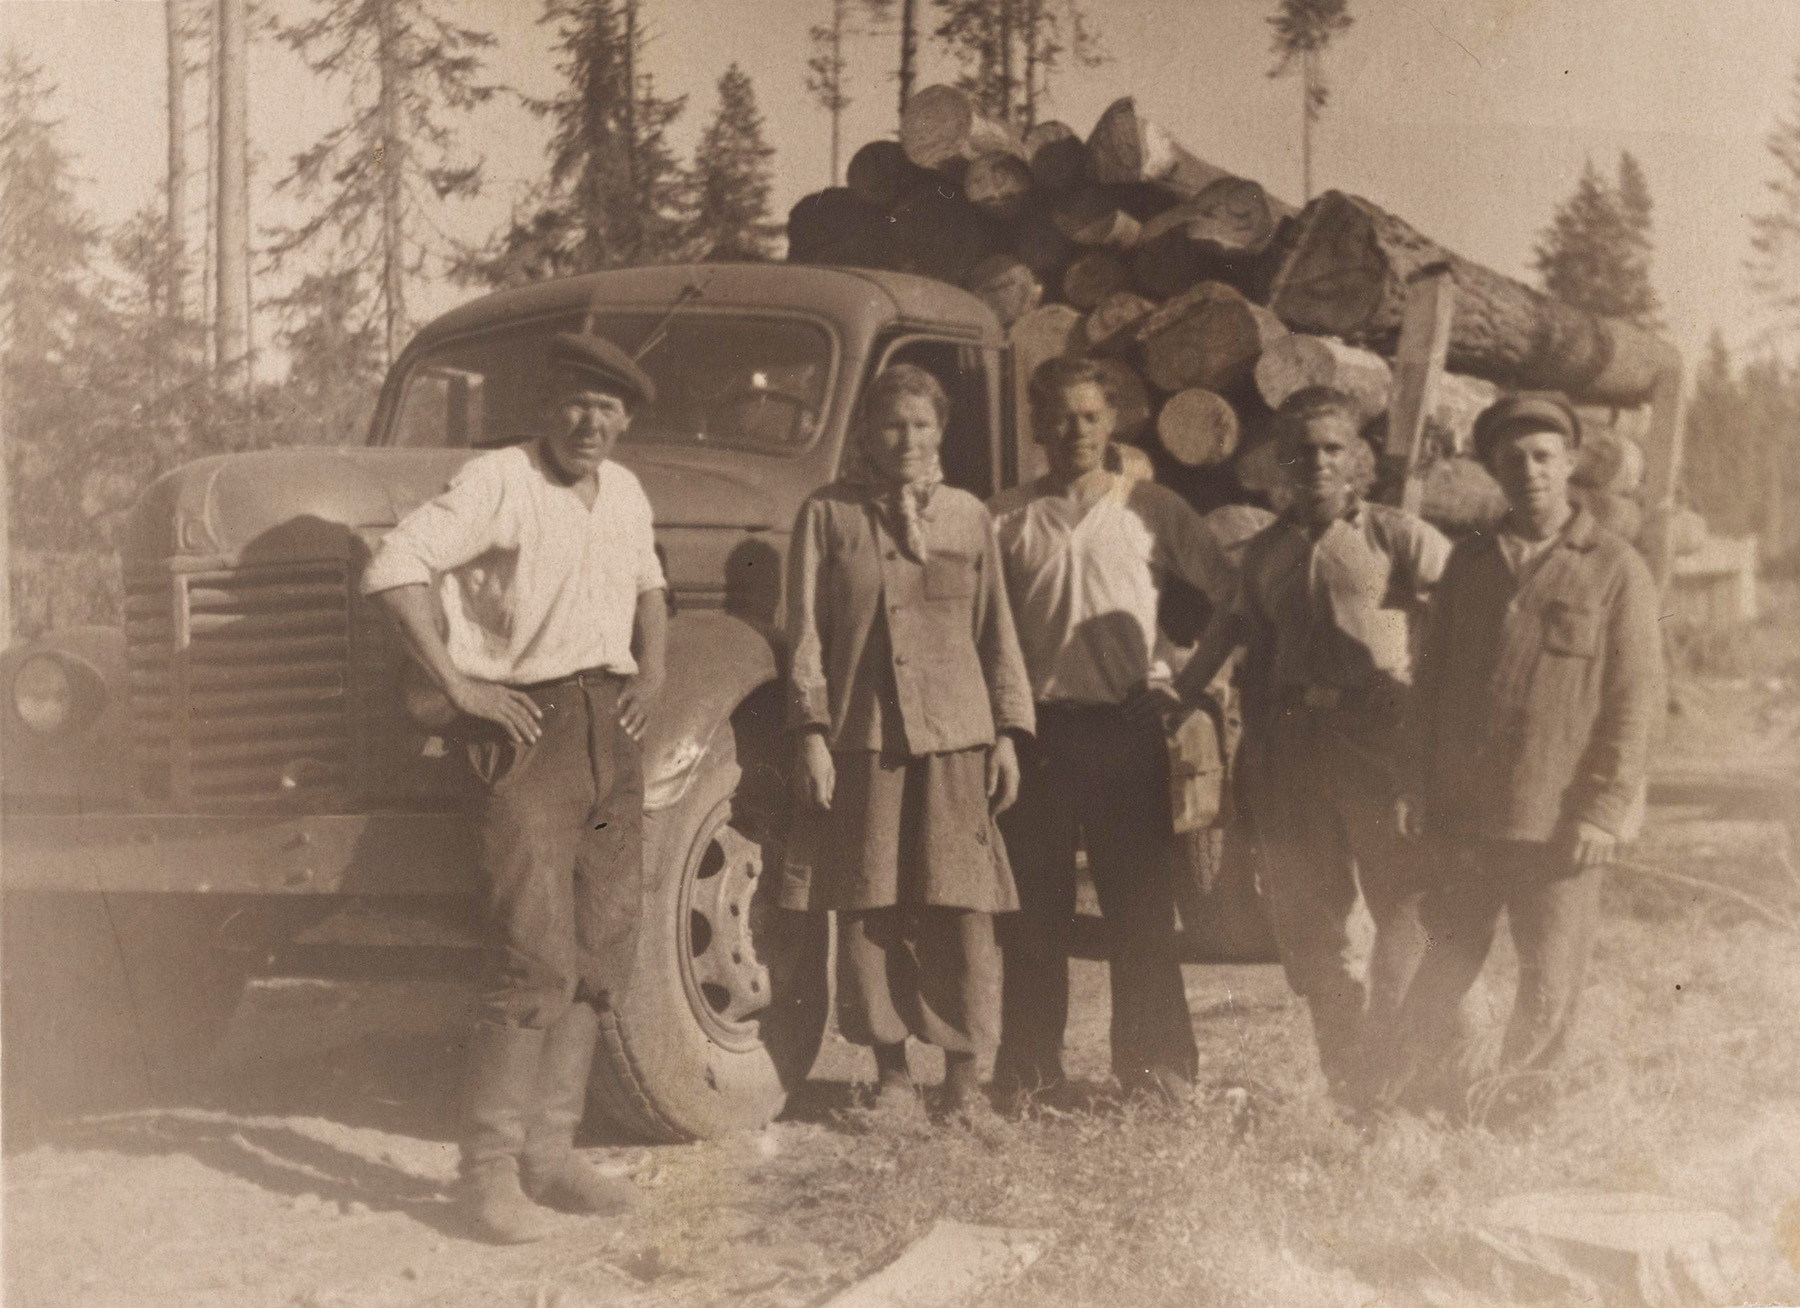 Inkeriläisiä työläisiä metsätyömaalla Karjalassa. Kuva on otettu noin vuonna 1950 Paatastissa, joka sijaitsee 50 kilometriä Petroskoista pohjoiseen. SKS KIA, Aino Merosen arkisto. SKS. CC BY 4.0